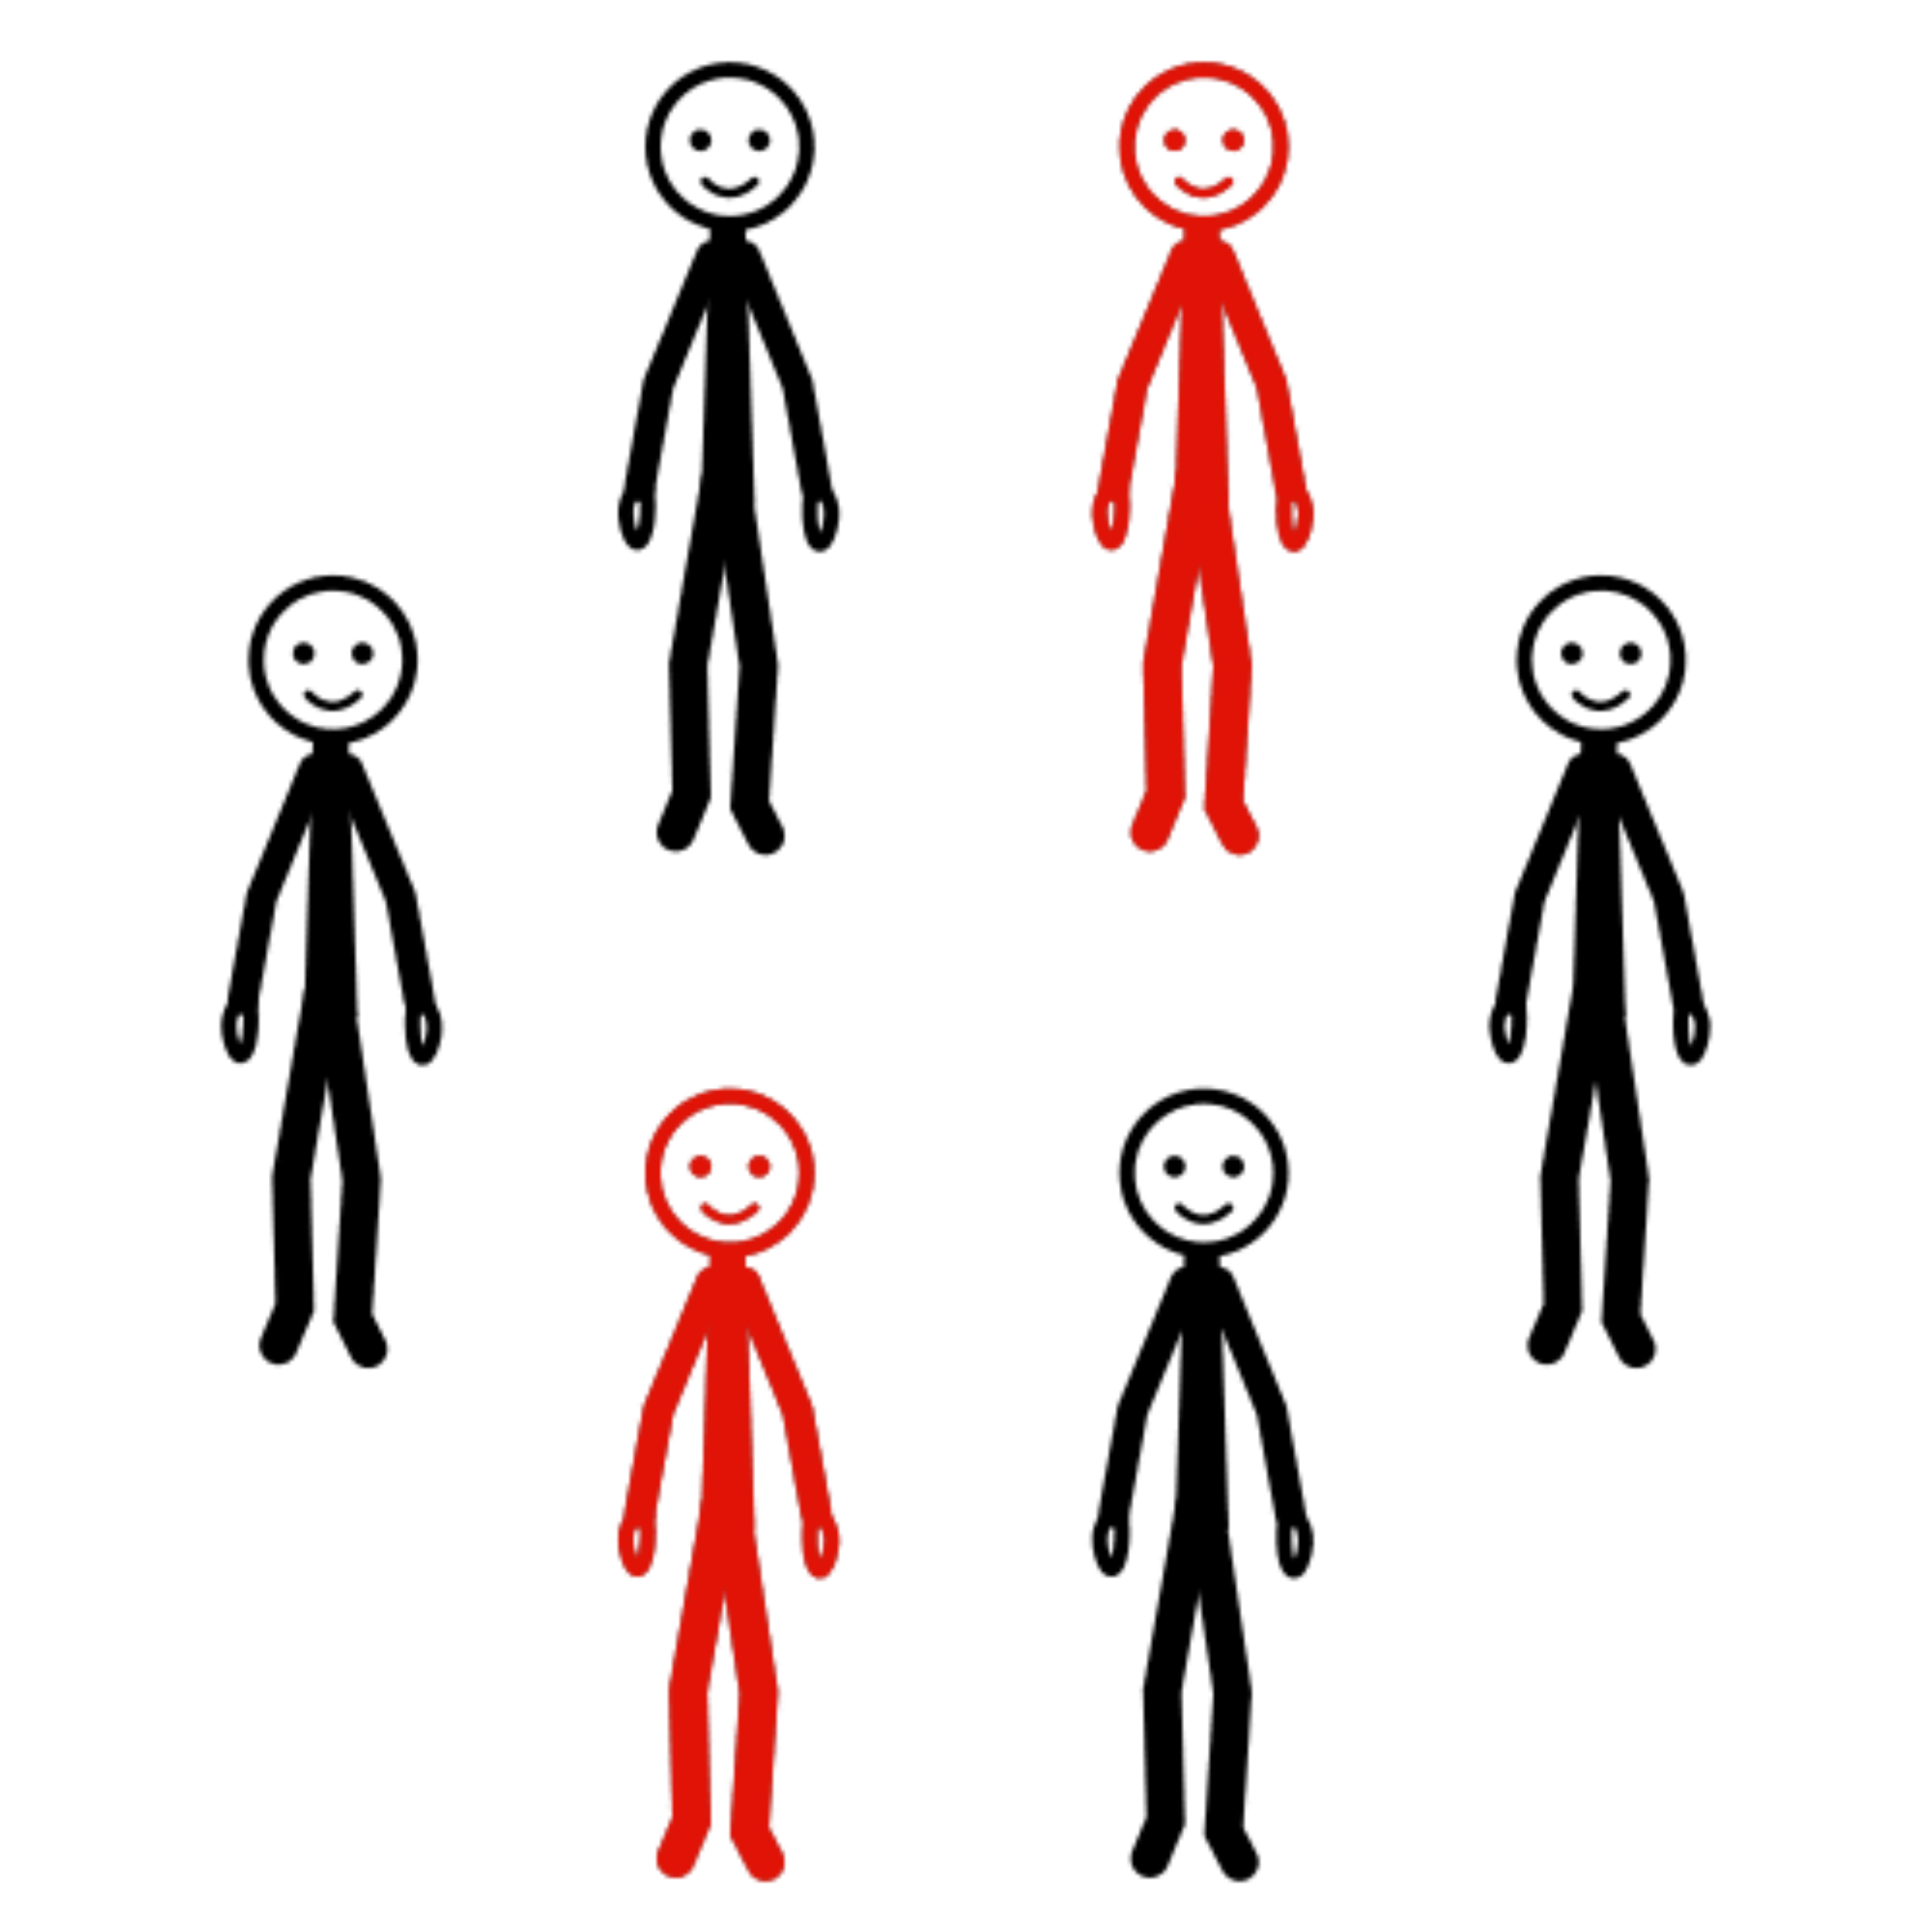 Imagen de varias personas donde 2 son de color rojo, como simbolo de que van a participar.